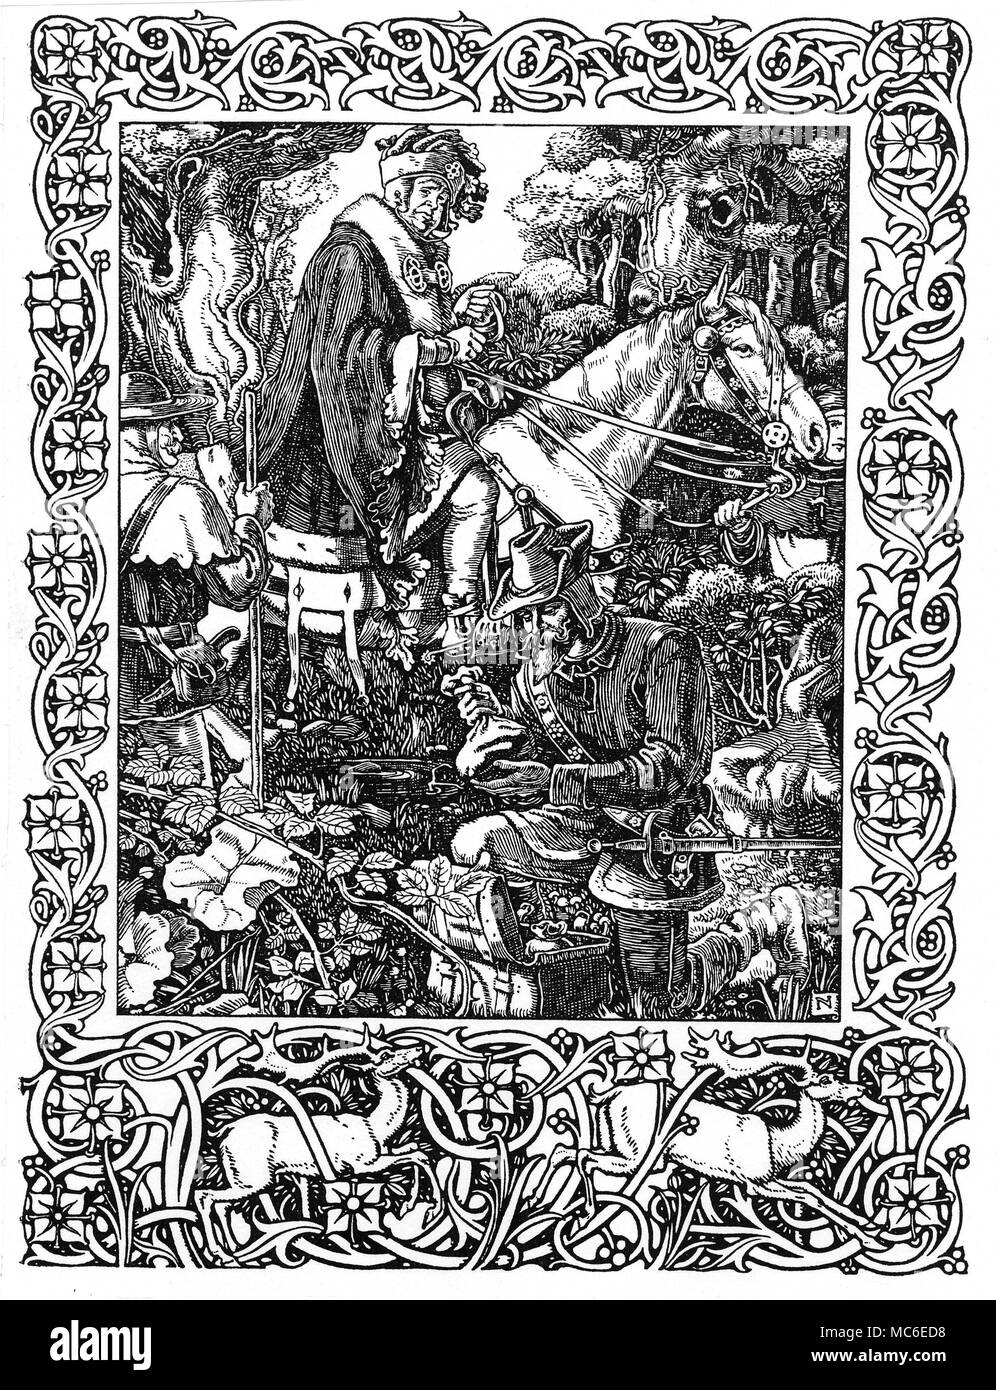 Mitologia - ROBIN HOOD Robin Hood e il suo allegro uomini alleviare lo sceriffo di Nottingham della sua ricchezza nella Foresta di Sherwood. Dal nobile nascita e Atchievements galante di quello straordinario fuorilegge, Robin Hood, da 'un ingegnoso antiquario'. Foto Stock